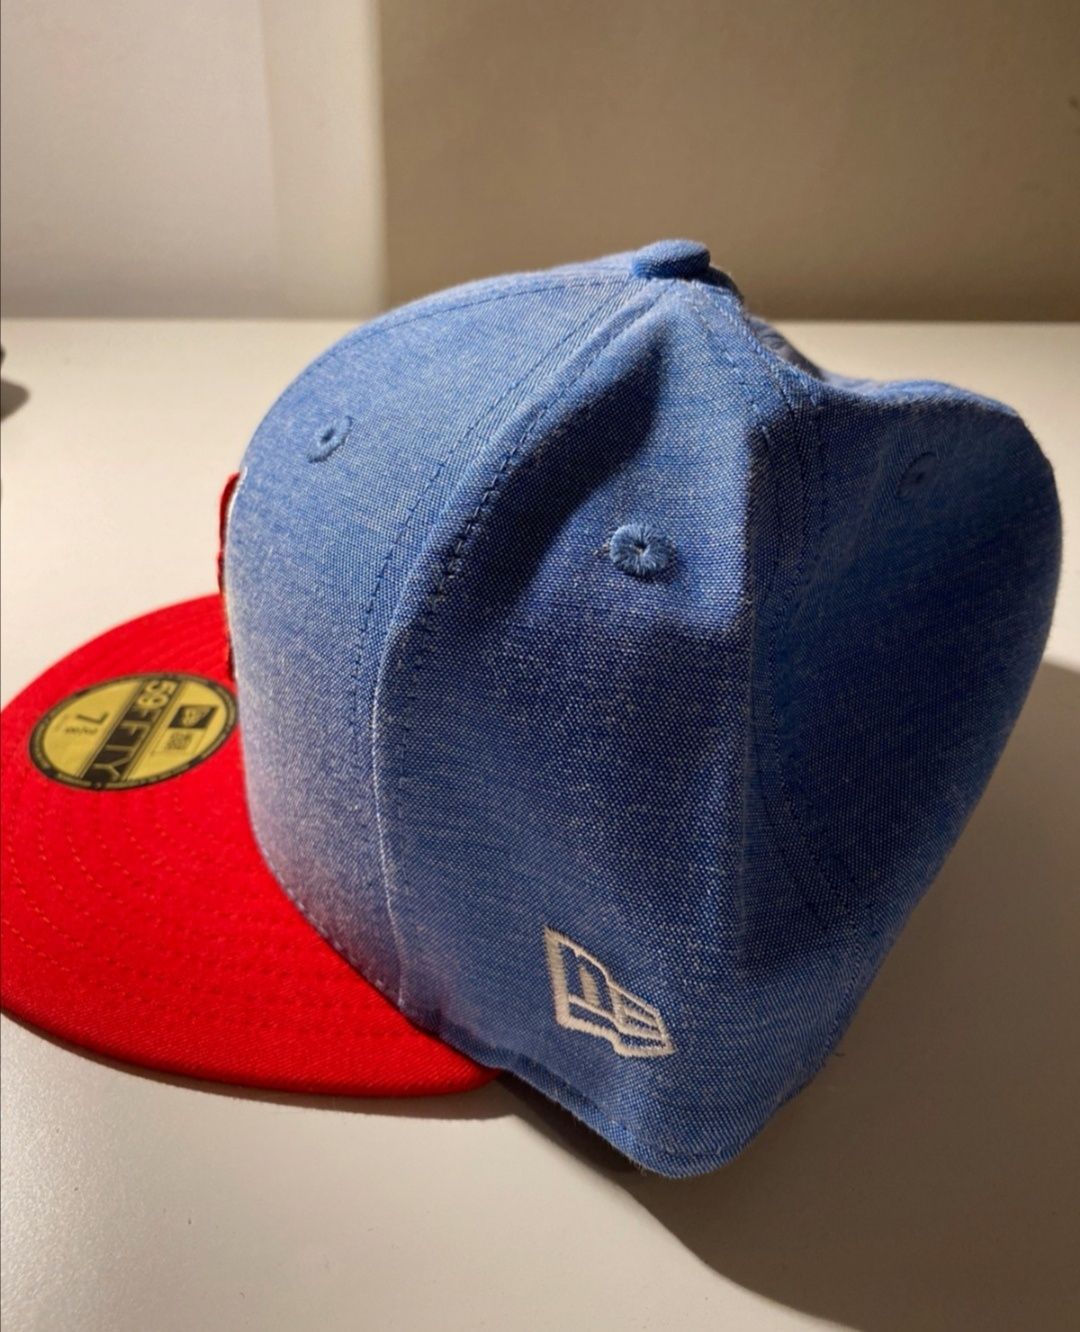 Fullcap New Era czapka